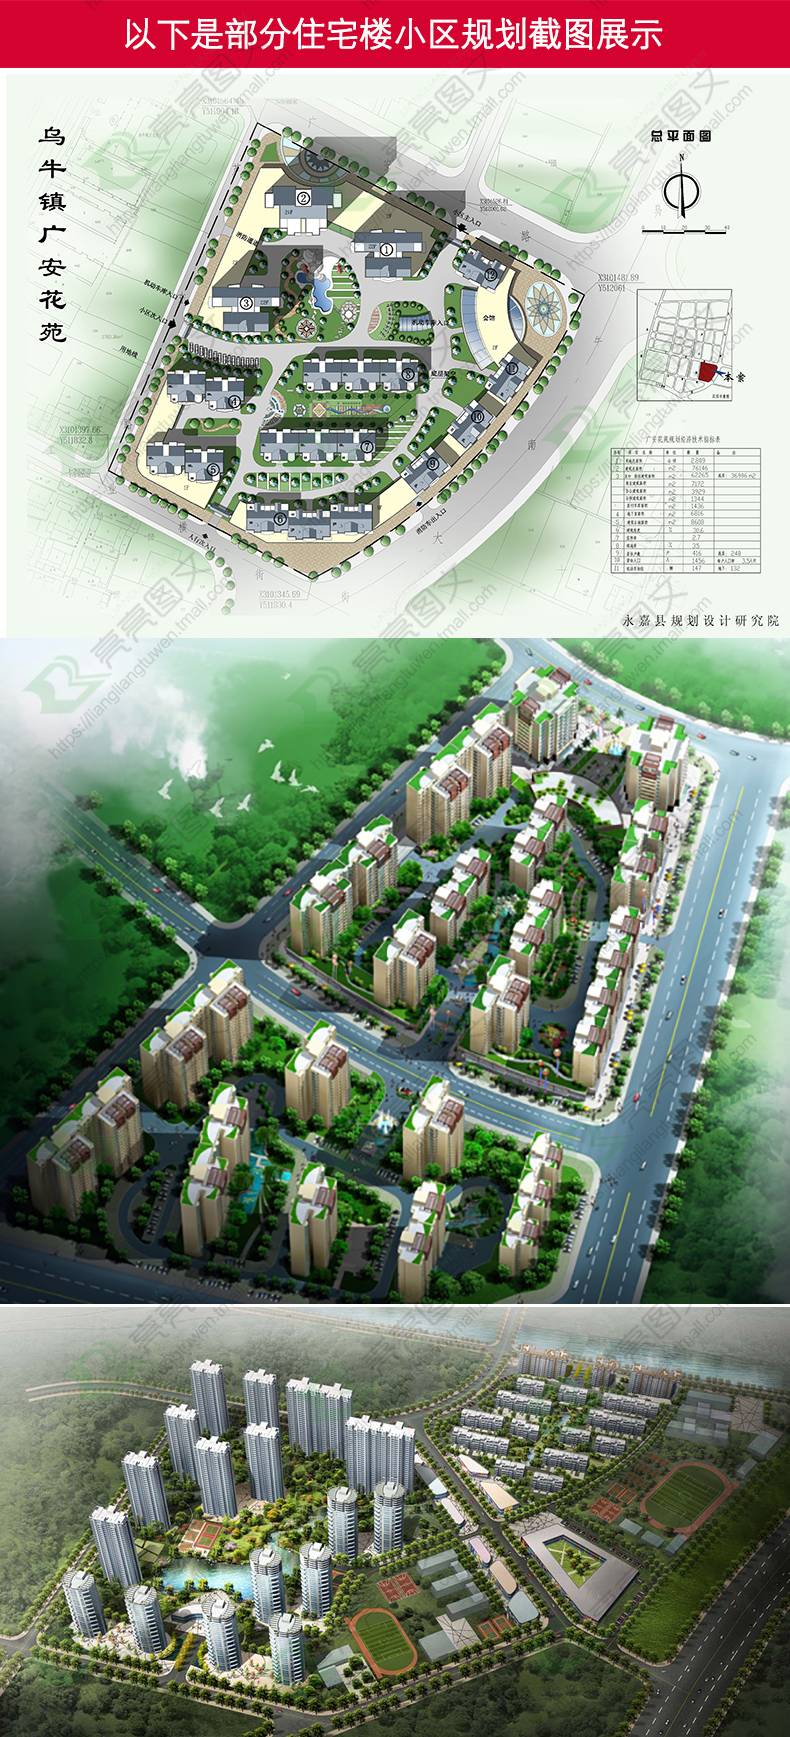 居住区住宅规划设计户型图素材建筑平面立面CAD设计方案图库图纸